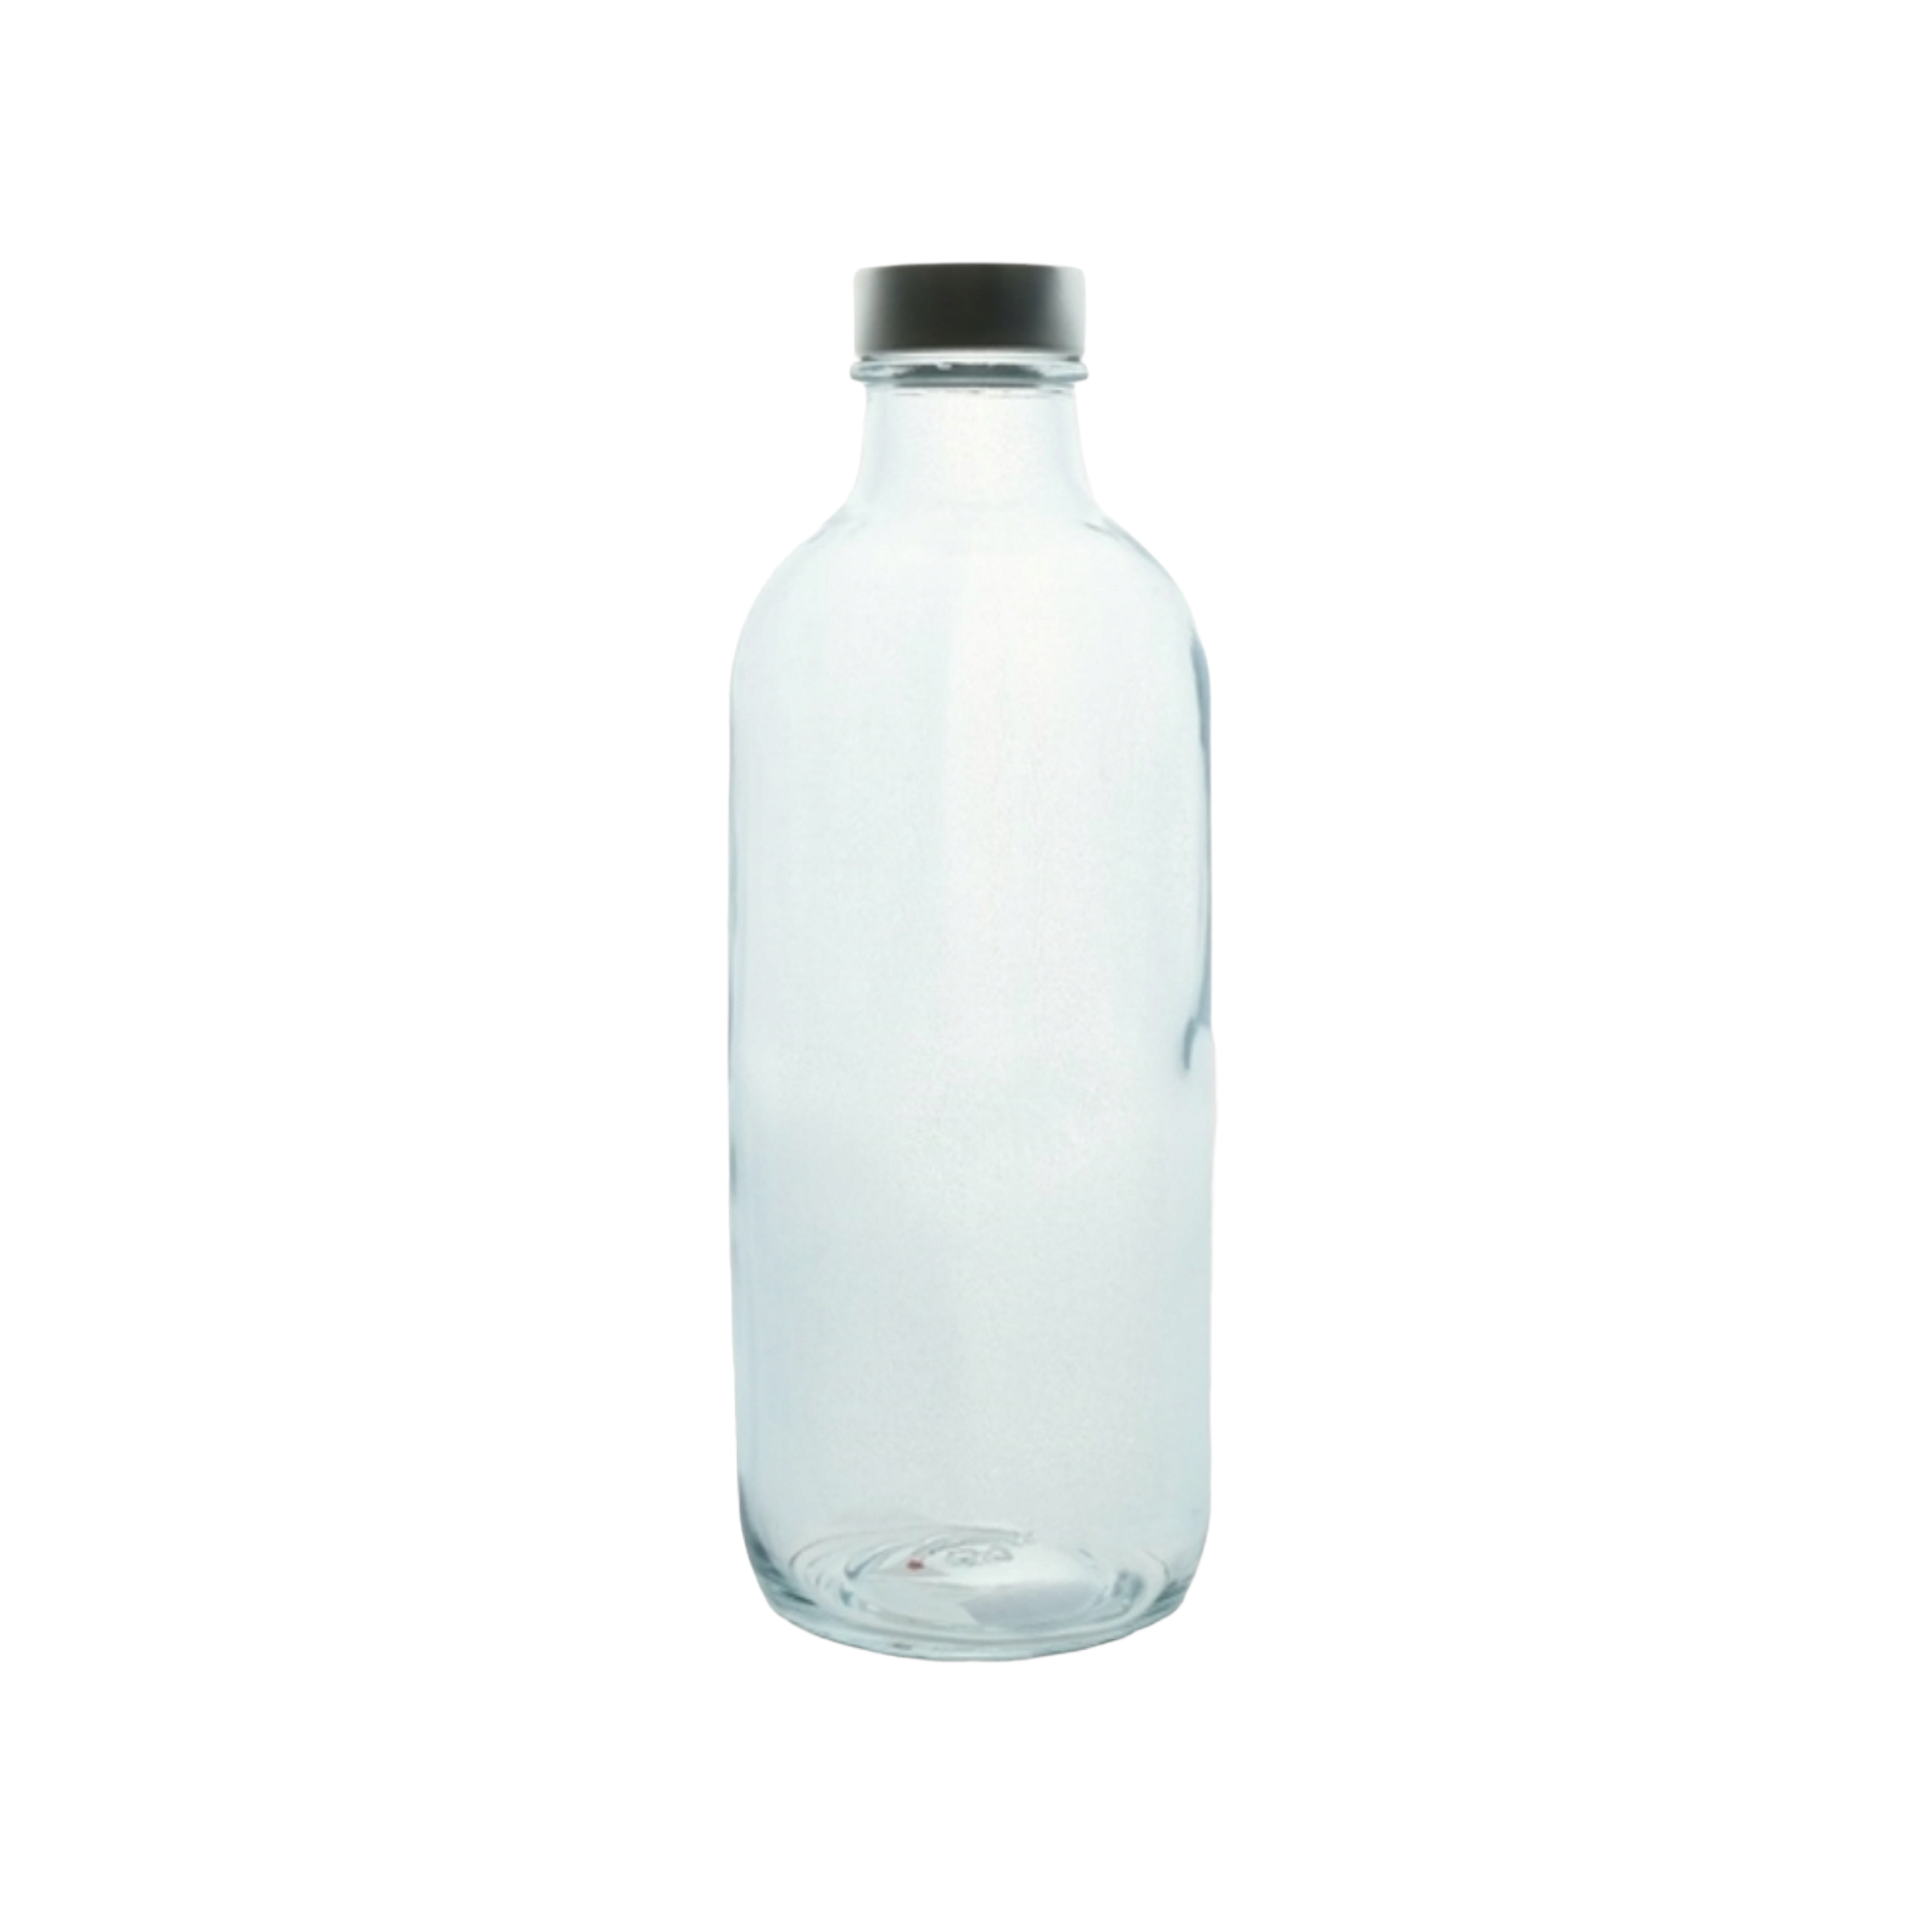 Pasabahce Iconic Glass Fridge Bottle 500ml 24210